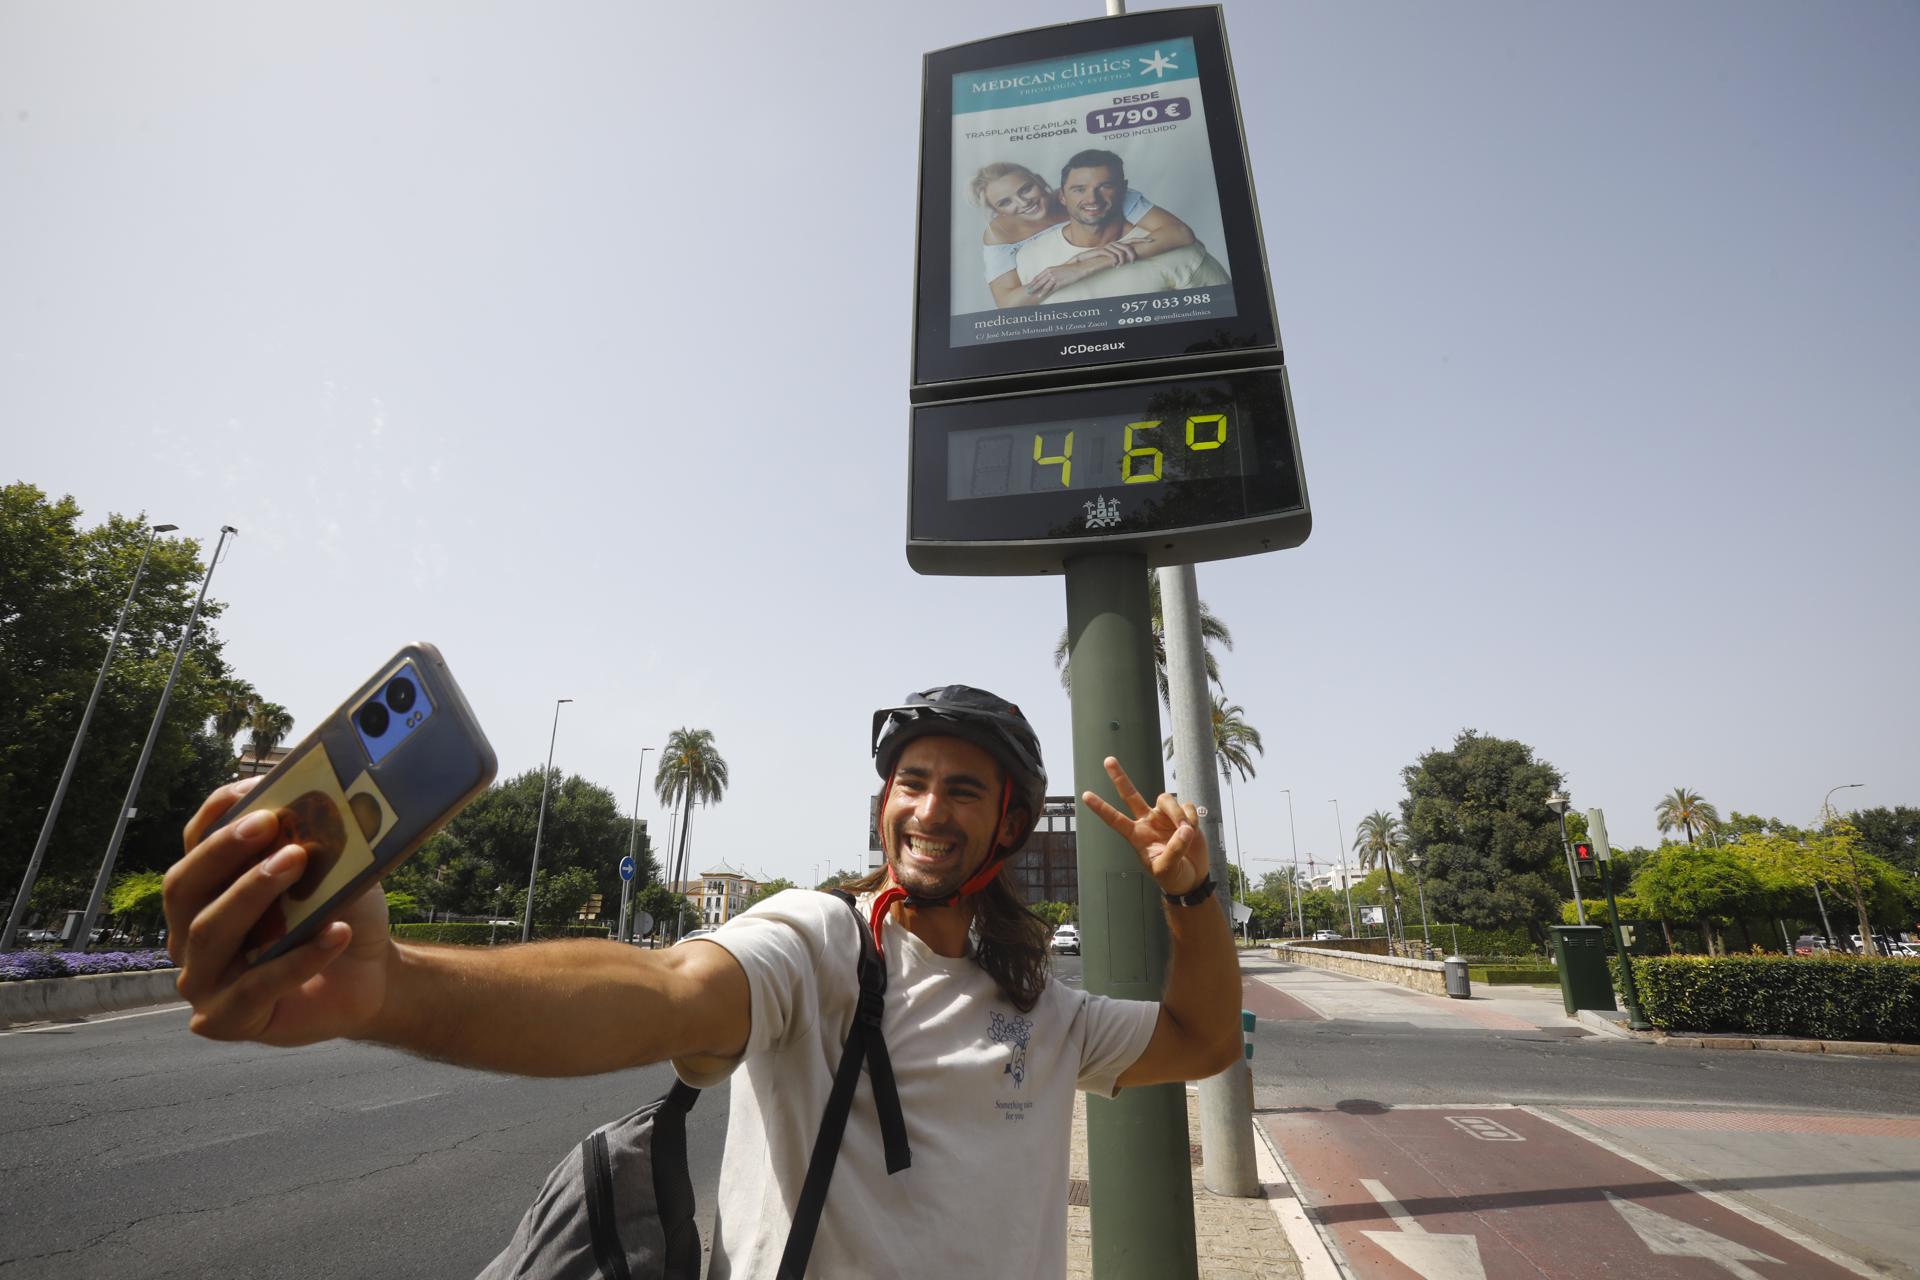 Un joven se fotografía delante de un termómetro de calle en Córdoba que marca 46 grados. EFE/Salas